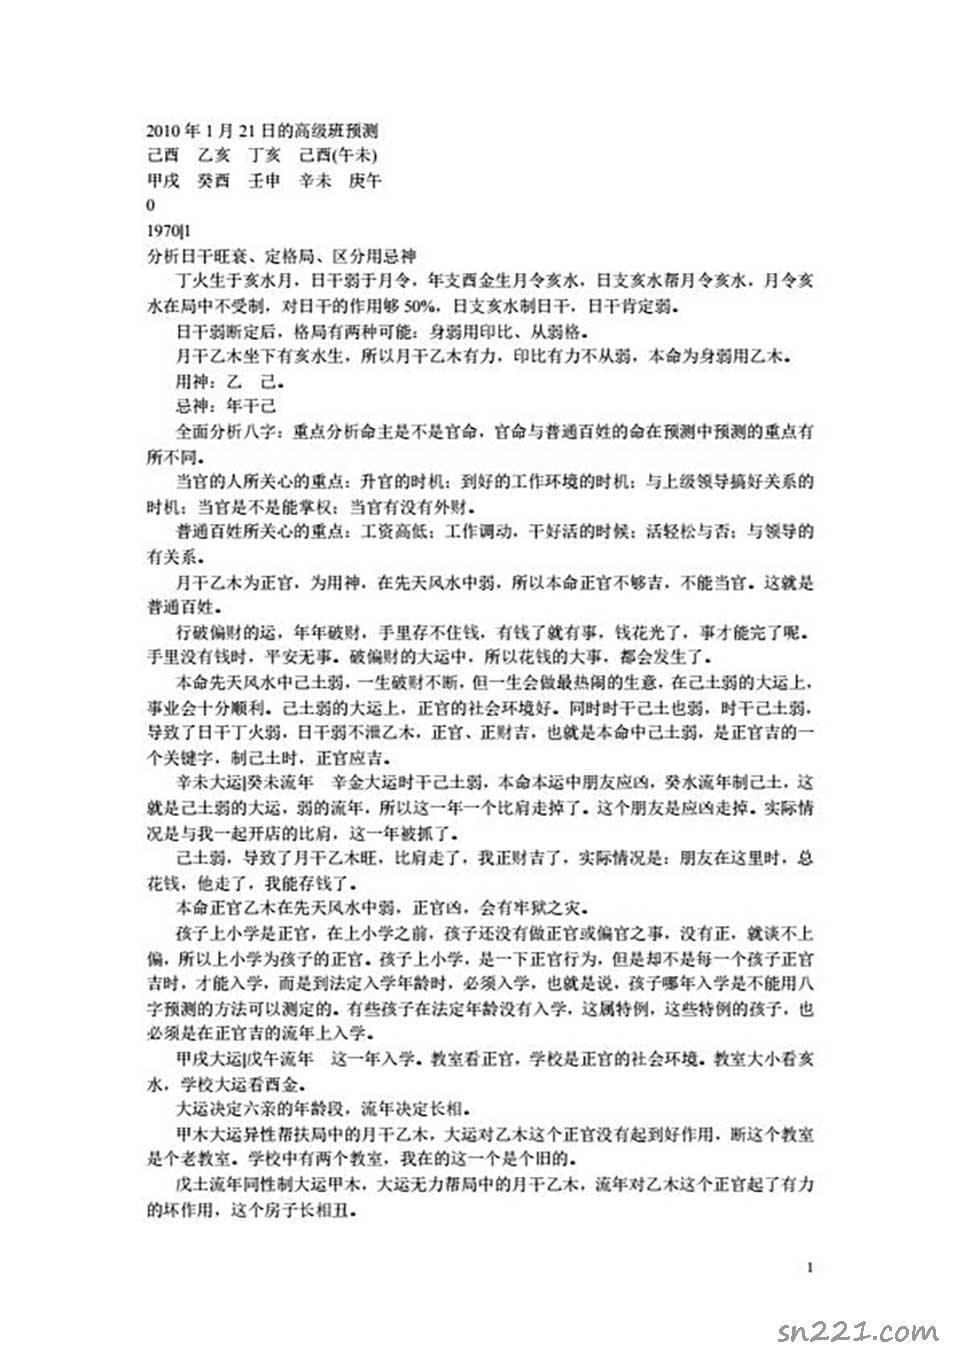 李涵辰-2010年1月21日的高級班預測30頁.pdf